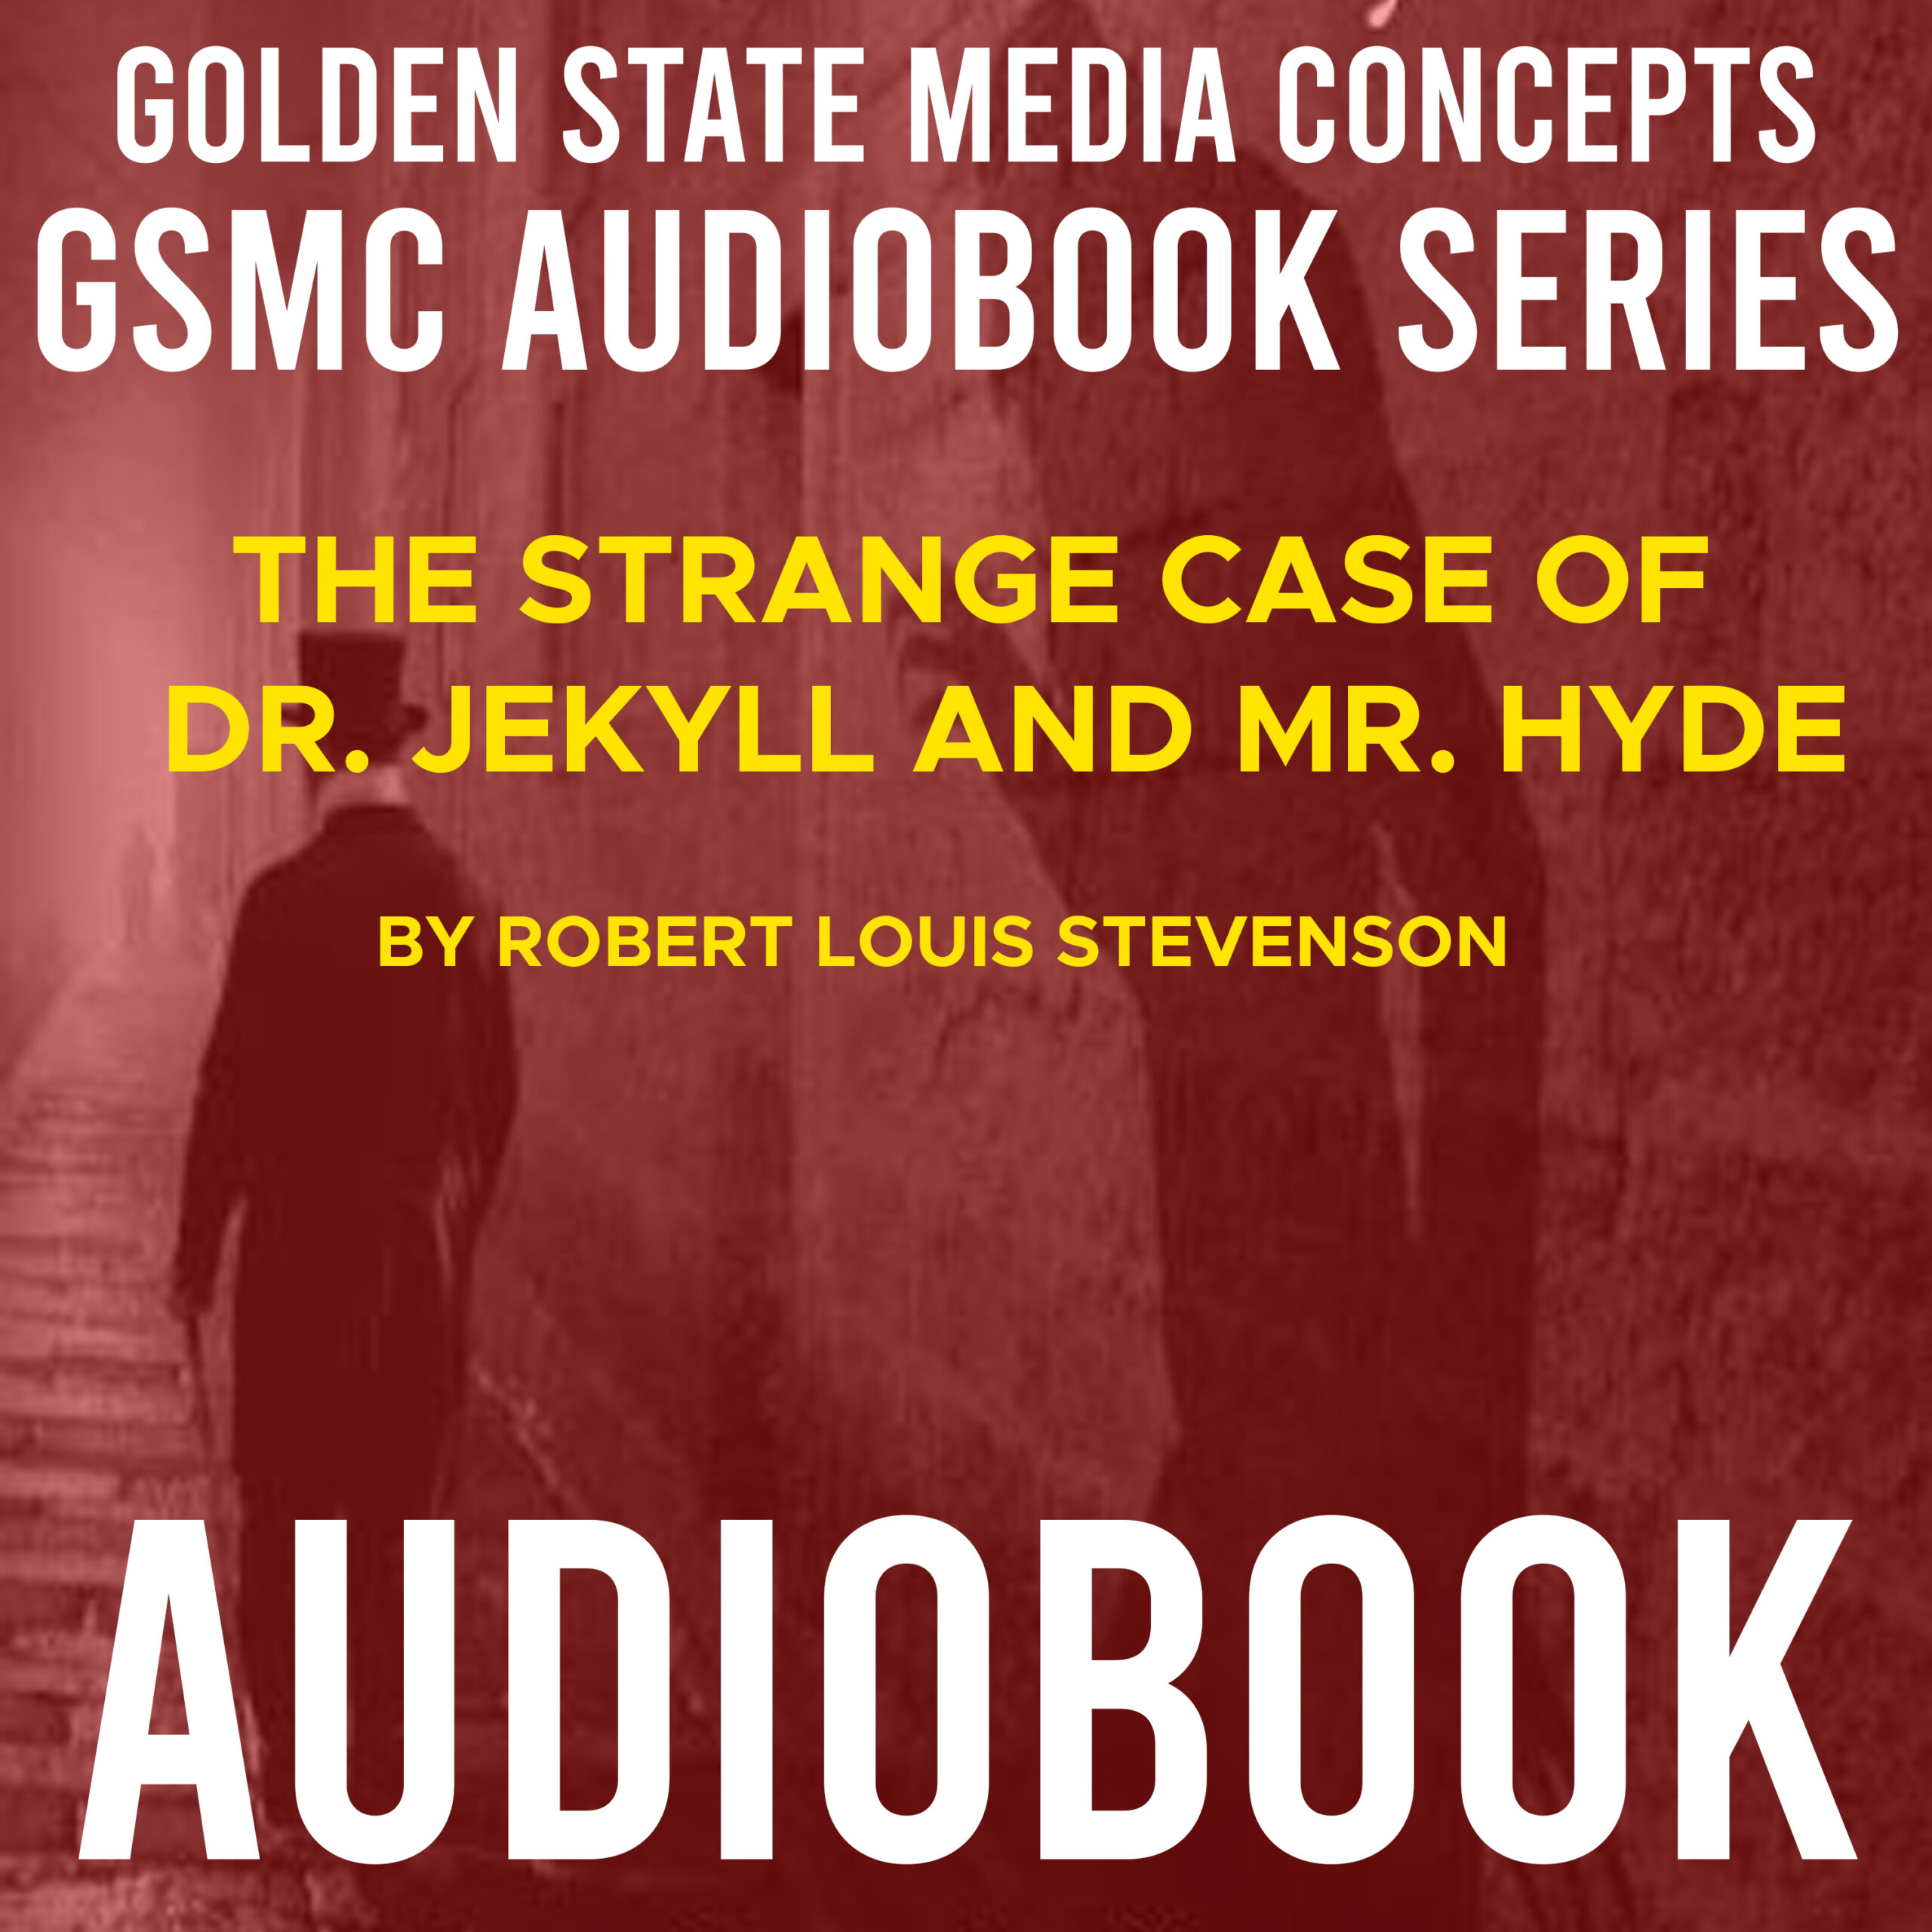 GSMC Audiobook Series: The Strange Case of Dr. Jekyll & Mr. Hyde by Robert Louis Stevenson